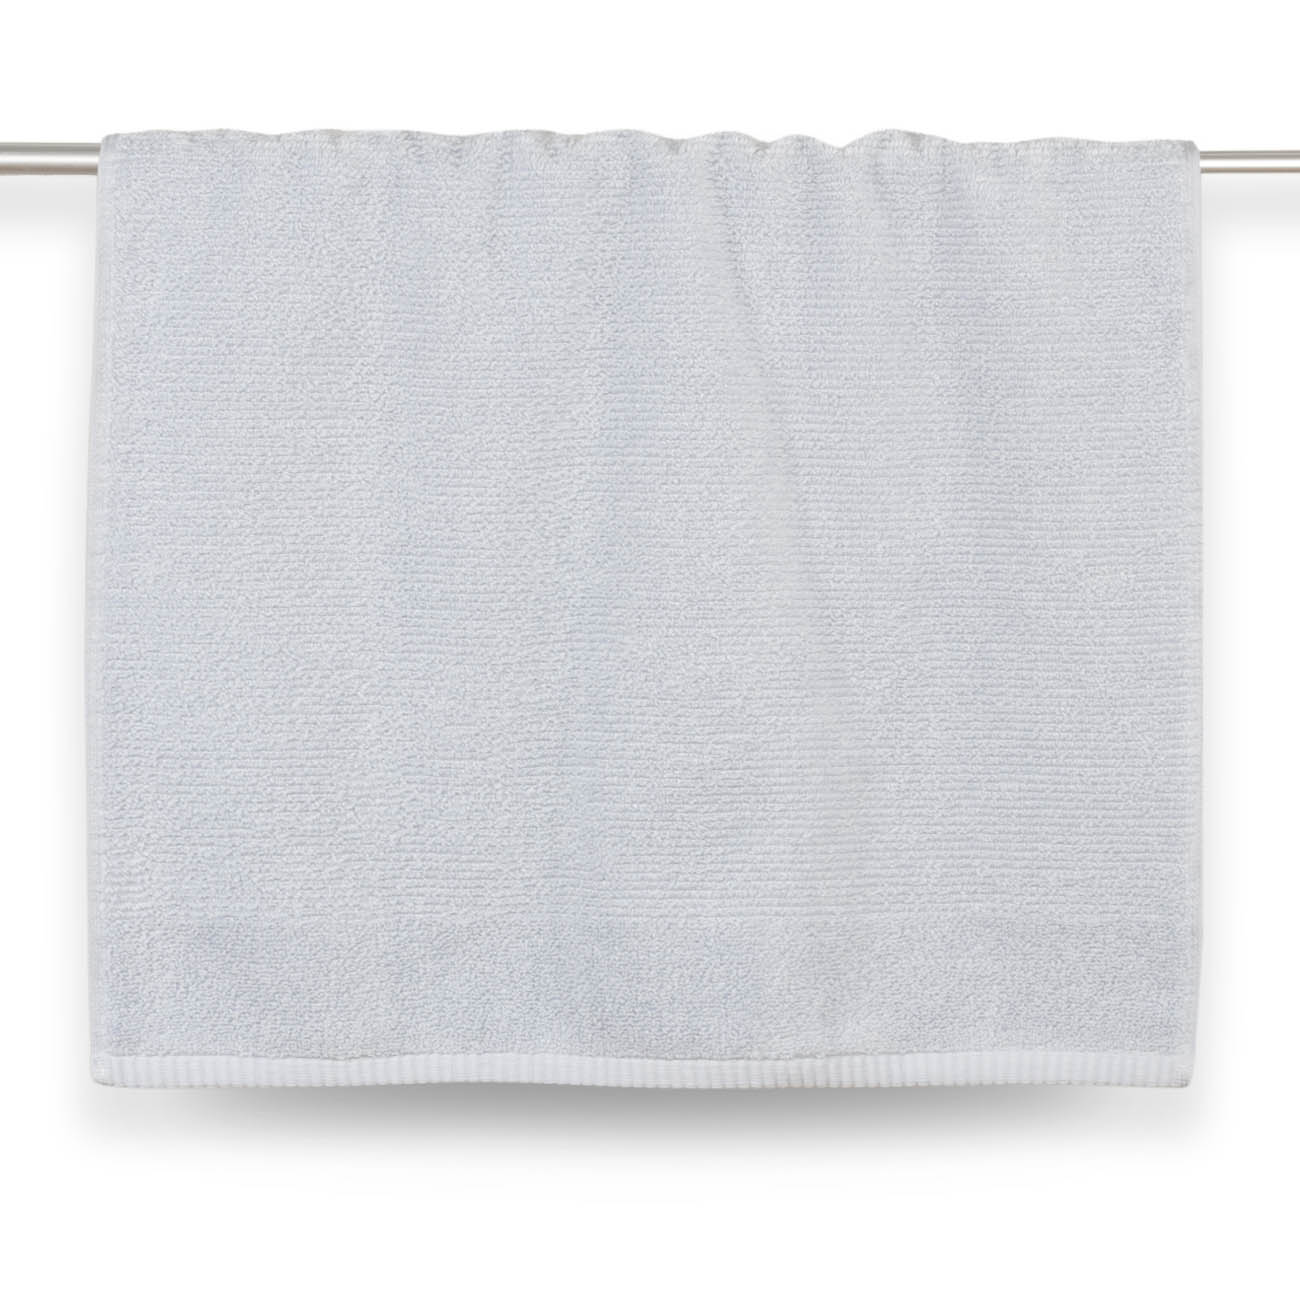 Towel, 50x90 cm, cotton, blue, Terry cotton изображение № 2